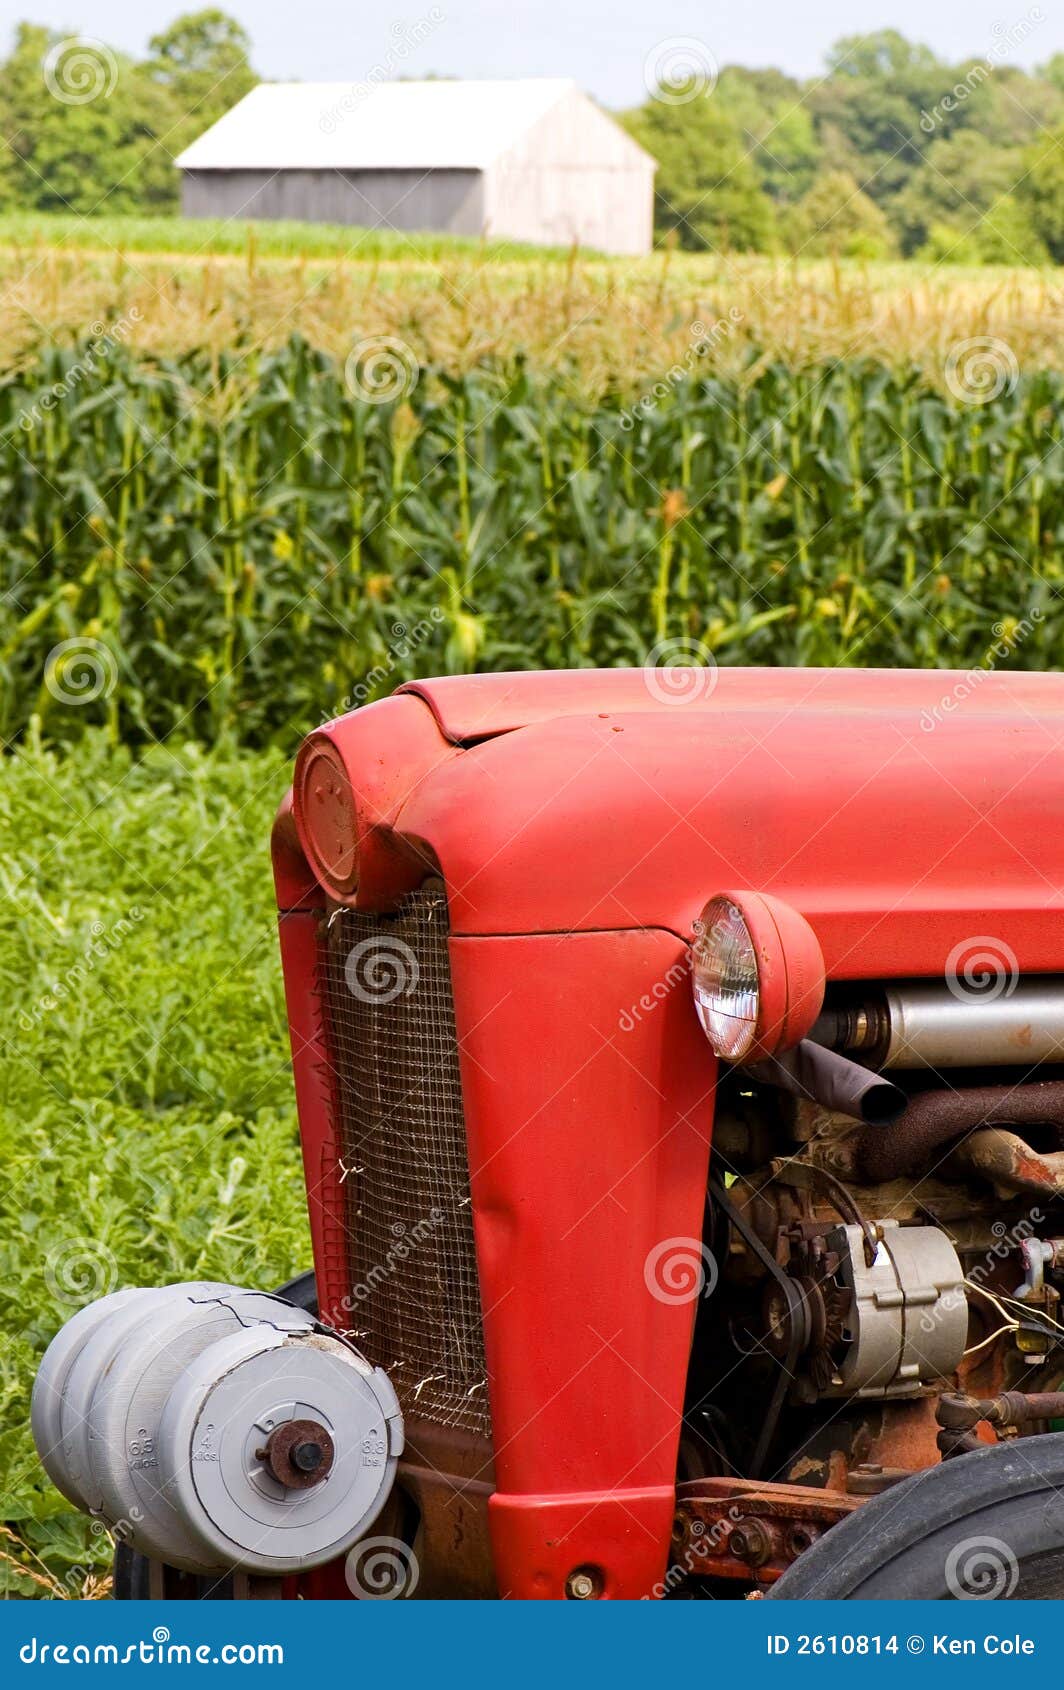 Avant d'entraîneur rouge de ferme. Une vue de l'avant d'un vieil entraîneur rouge de ferme sur le bord d'un champ de maïs avec une grange en bois dans la distance.